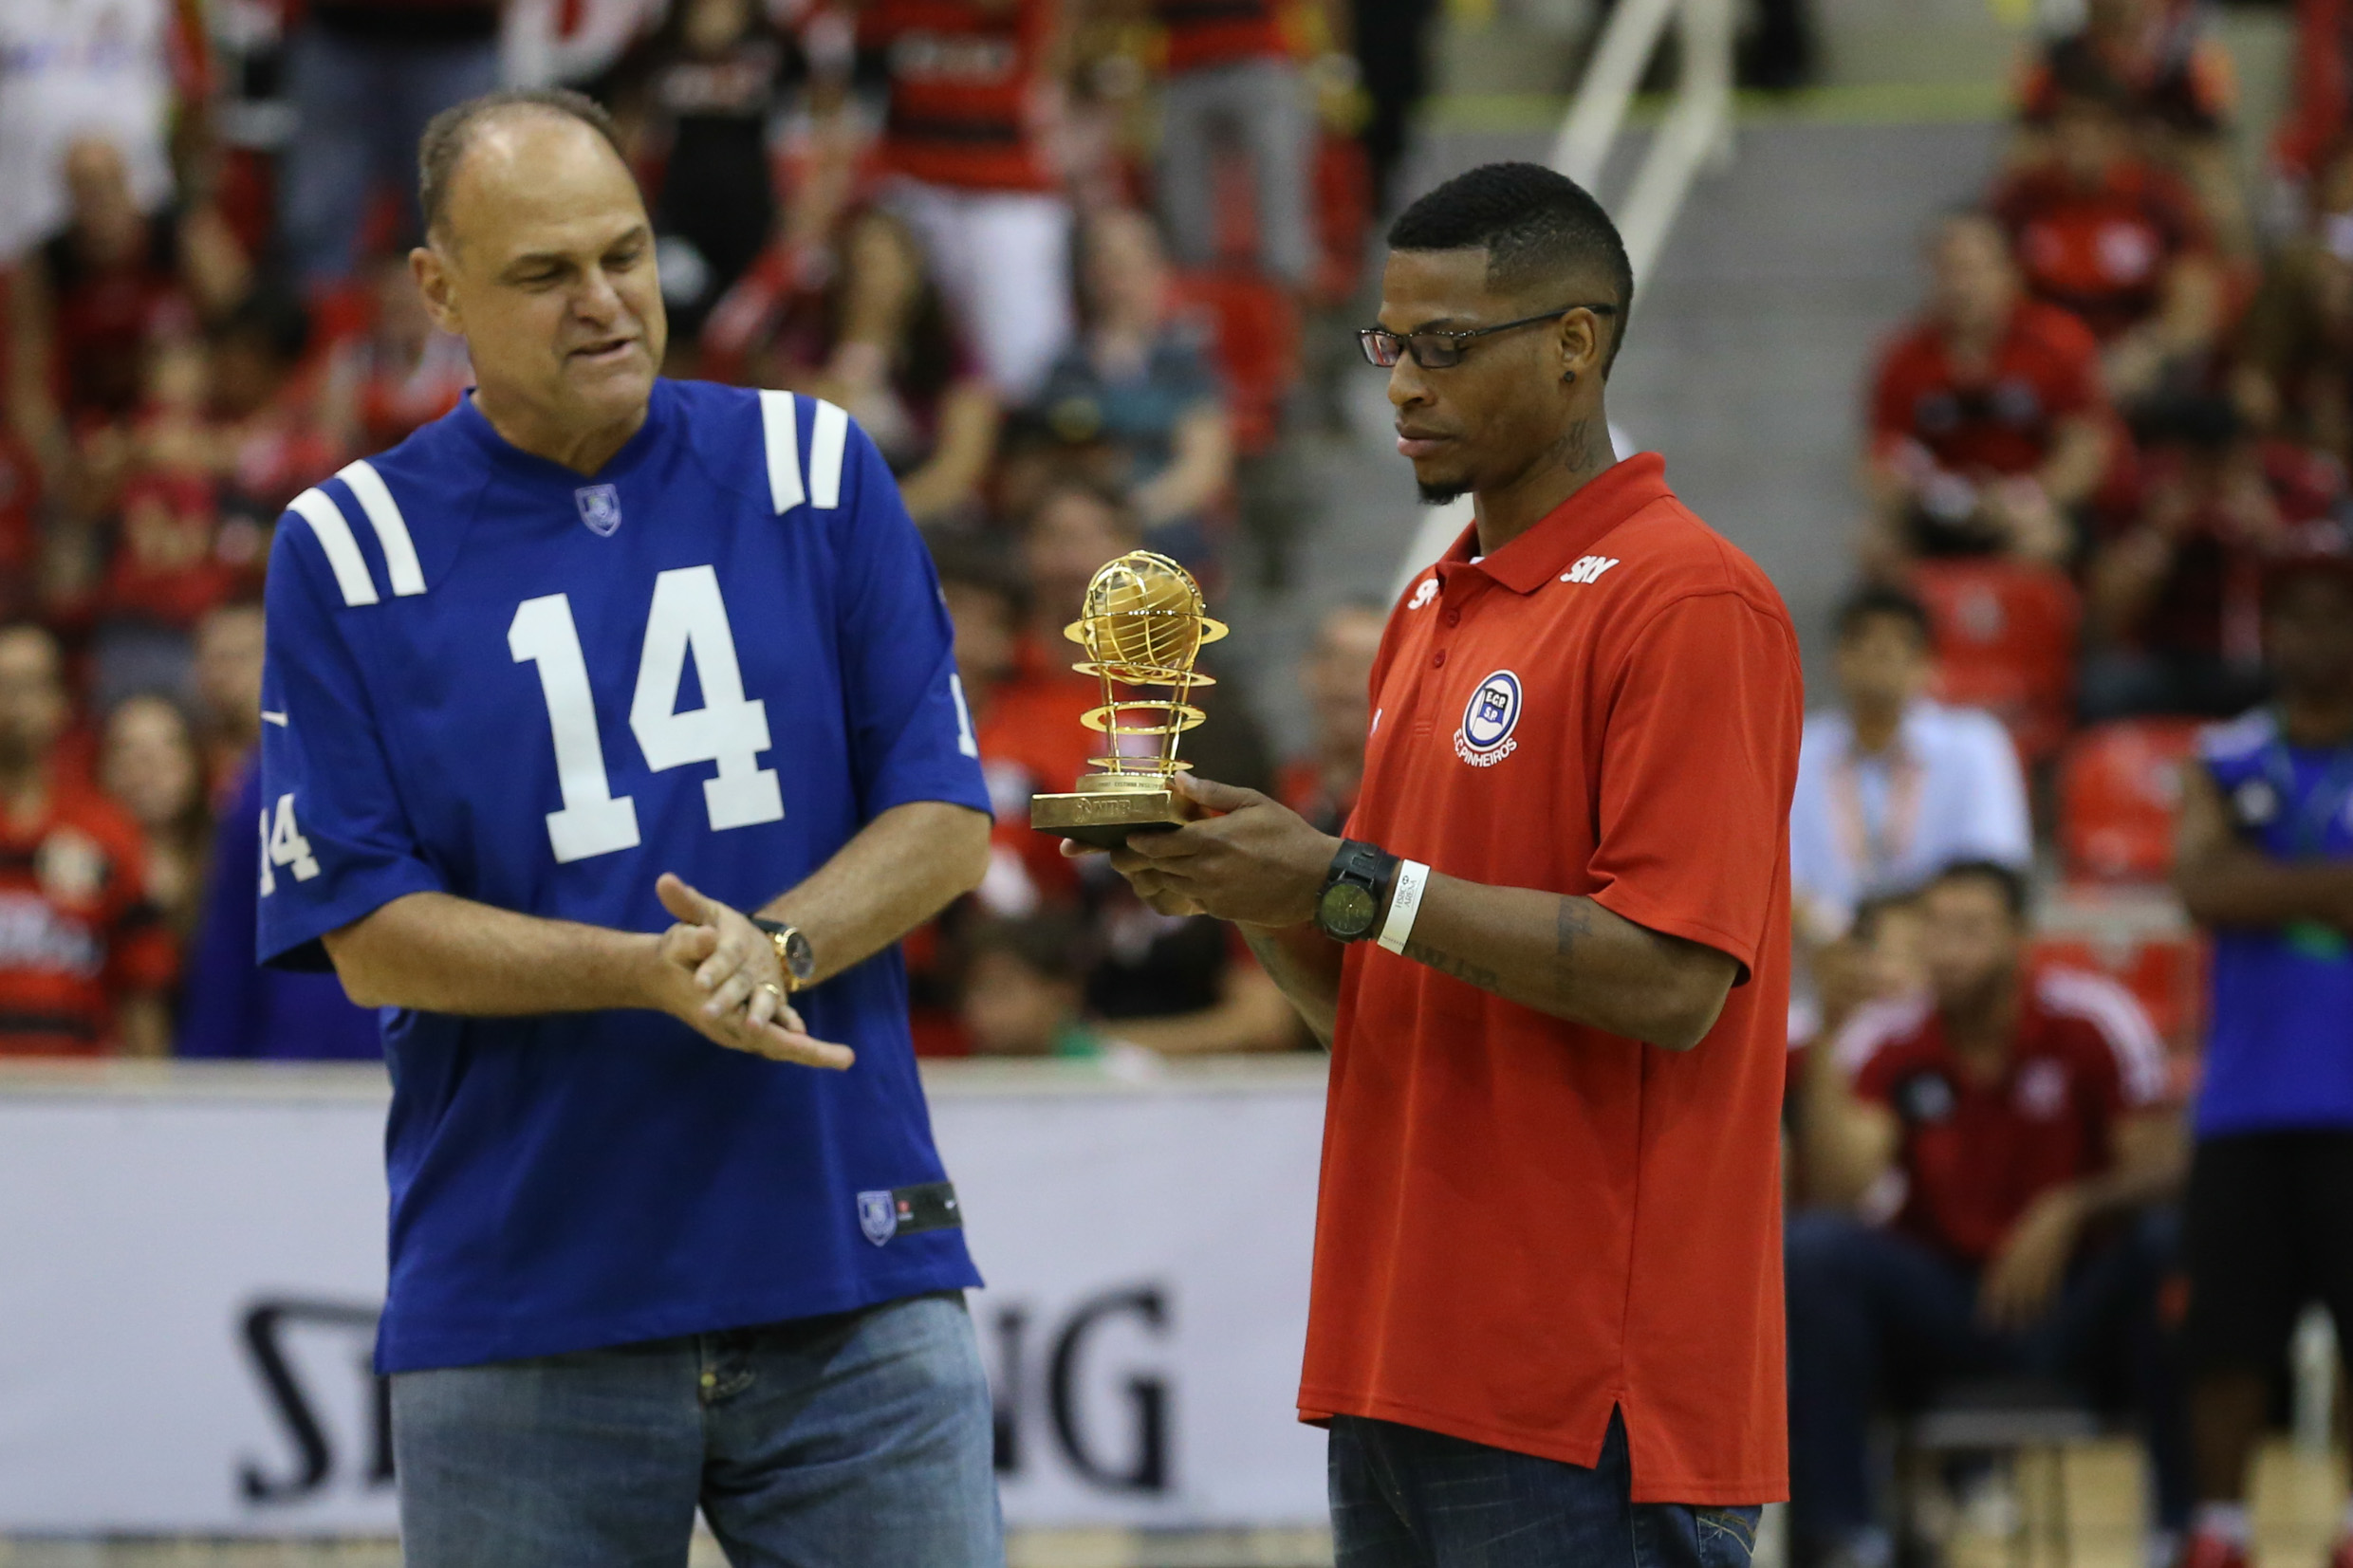 Oscar Schimdt entrega o troféu de cestinha do NBB6 para Shamell, do Pinheiros (Luiz Pires/LNB)